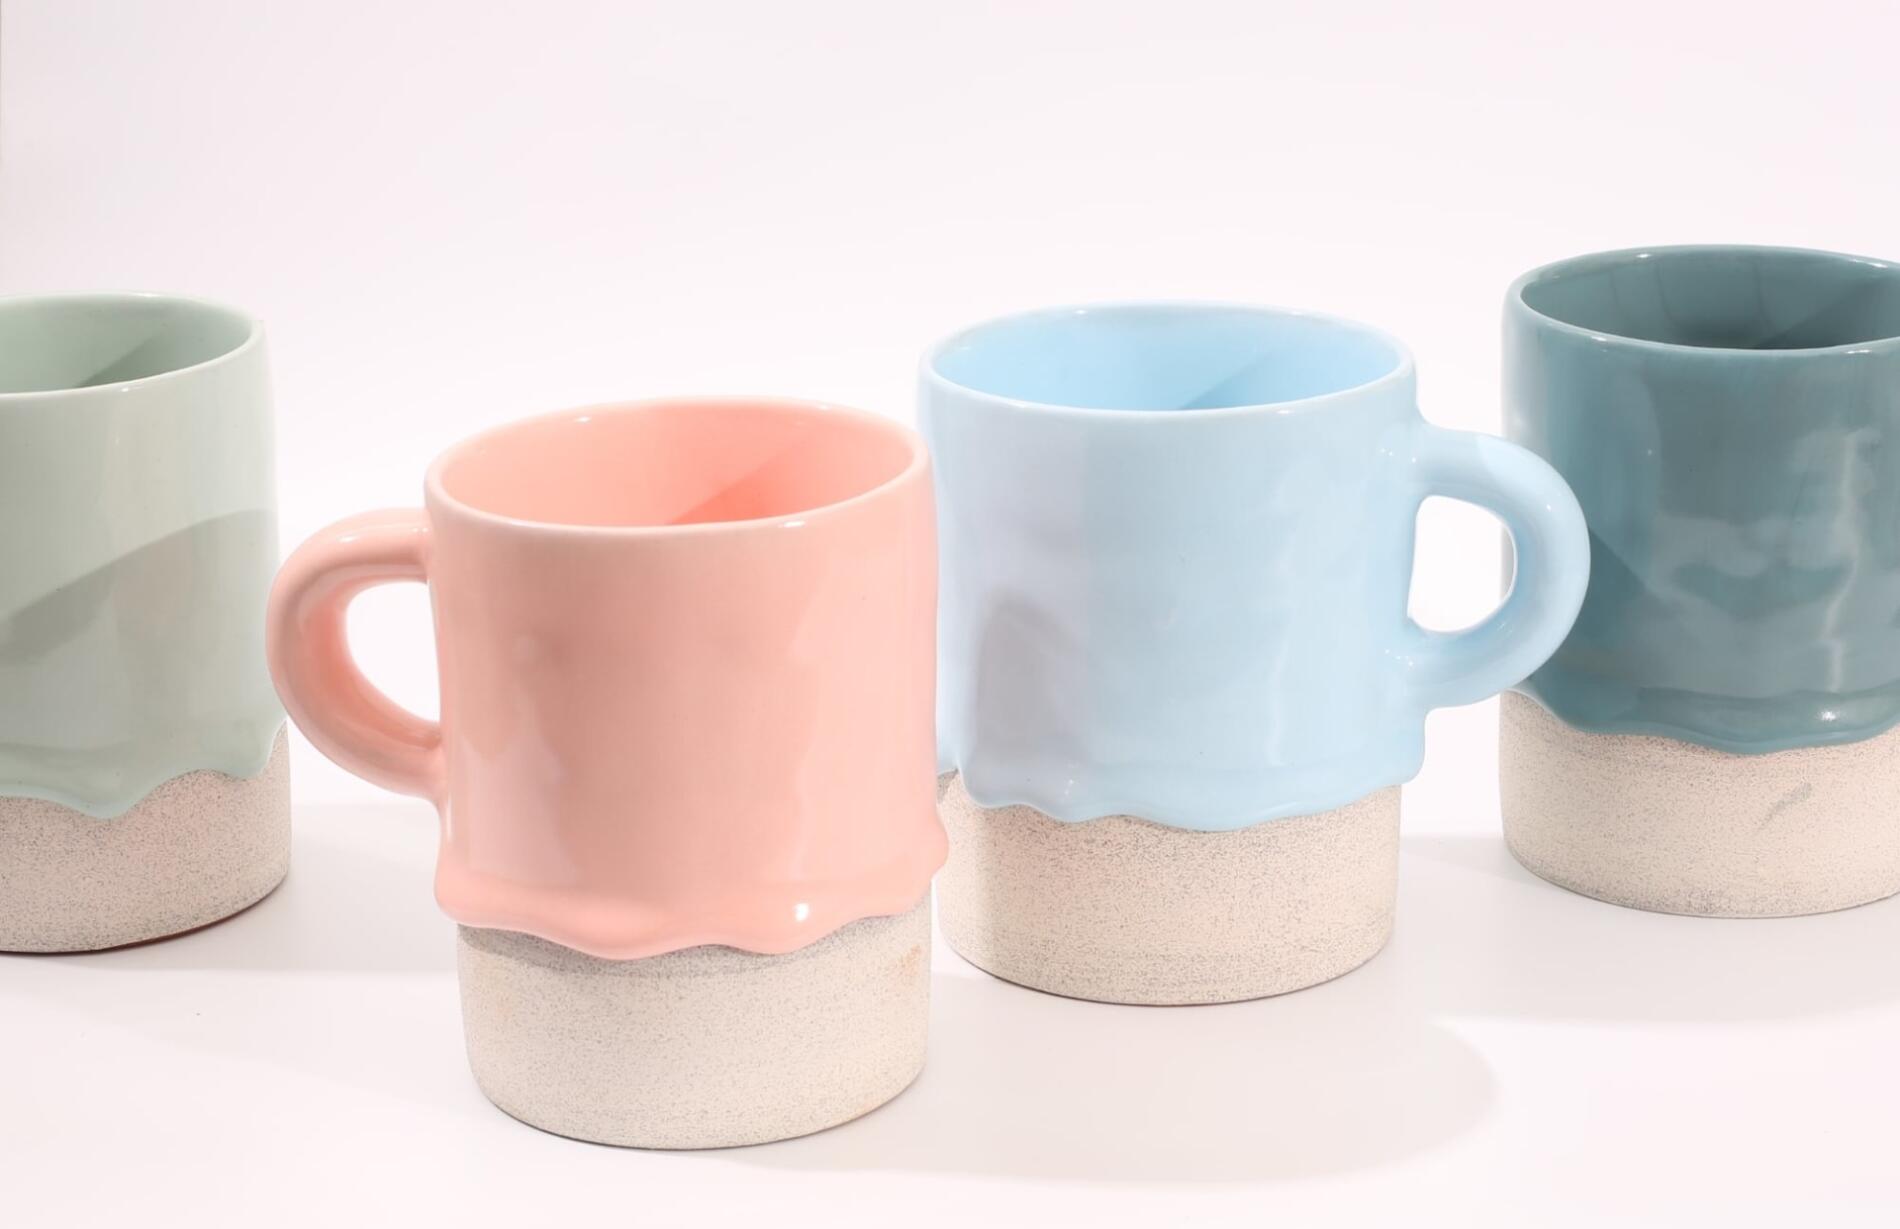 Brian Giniewski vasijas de ceramica colores pastel